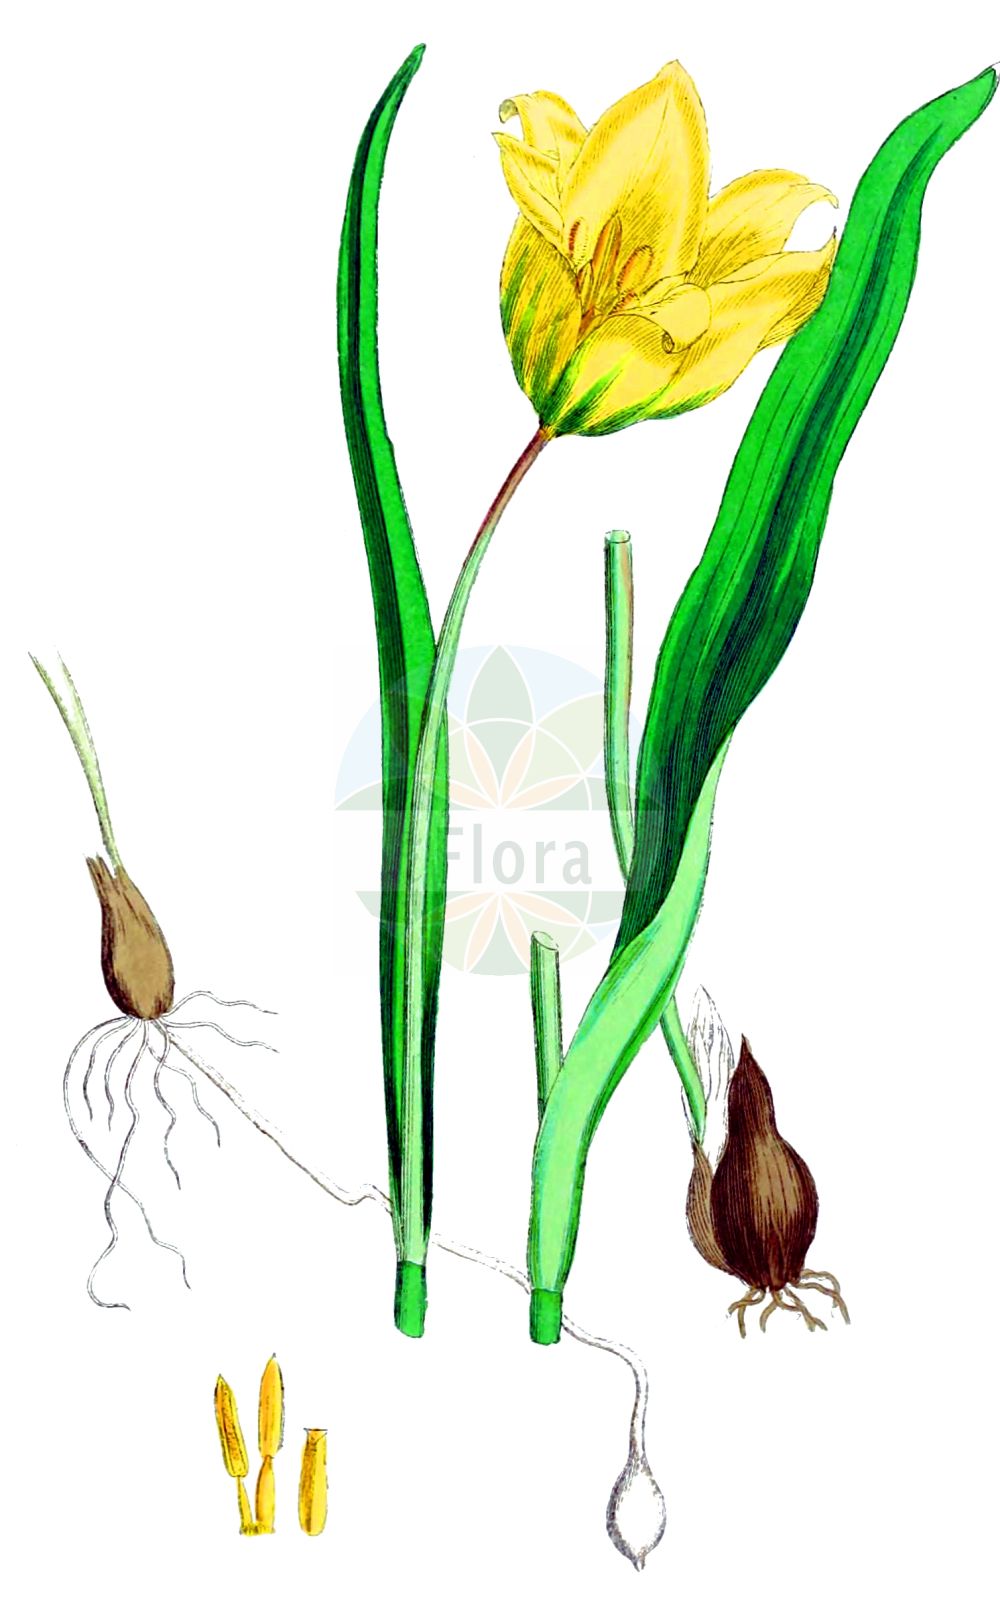 Historische Abbildung von Tulipa sylvestris (Wilde Tulpe - Wild Tulip). Das Bild zeigt Blatt, Bluete, Frucht und Same. ---- Historical Drawing of Tulipa sylvestris (Wilde Tulpe - Wild Tulip). The image is showing leaf, flower, fruit and seed.(Tulipa sylvestris,Wilde Tulpe,Wild Tulip,Liriopogon sylvestre,Tulipa sylvestris,Wilde Tulpe,Wild Tulip,Tulipa,Tulpe,Tulip,Liliaceae,Liliengewächse,Lily family,Blatt,Bluete,Frucht,Same,leaf,flower,fruit,seed,Sowerby (1790-1813))